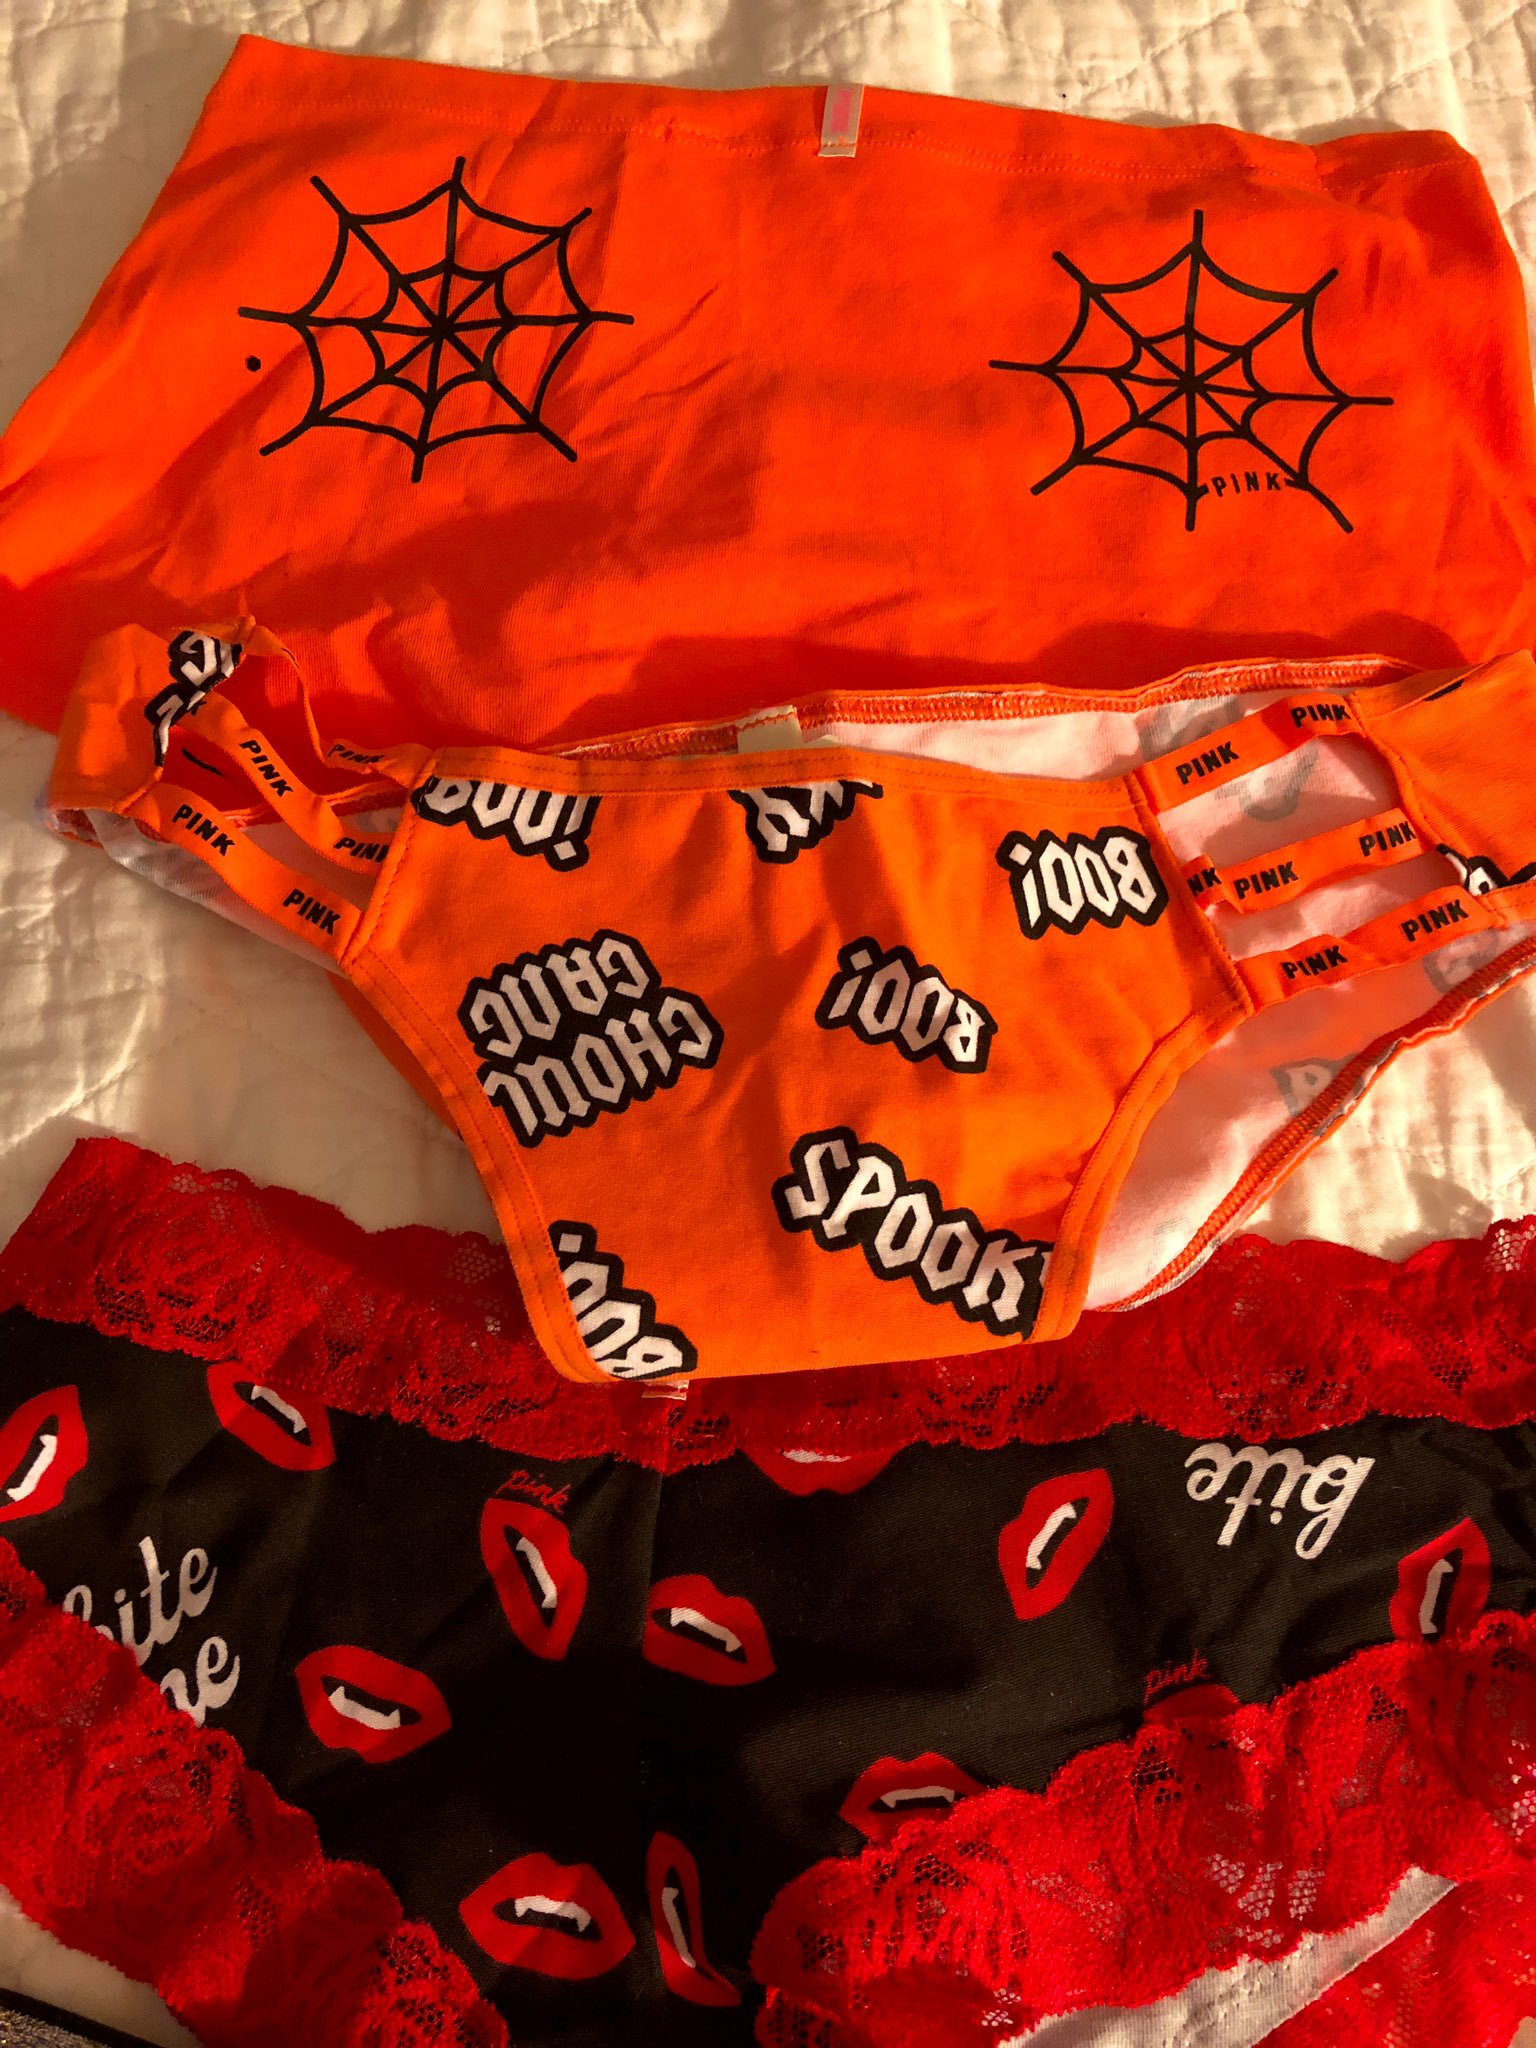 🎃👻 on X: Halloween underwear at Victoria secret for $4